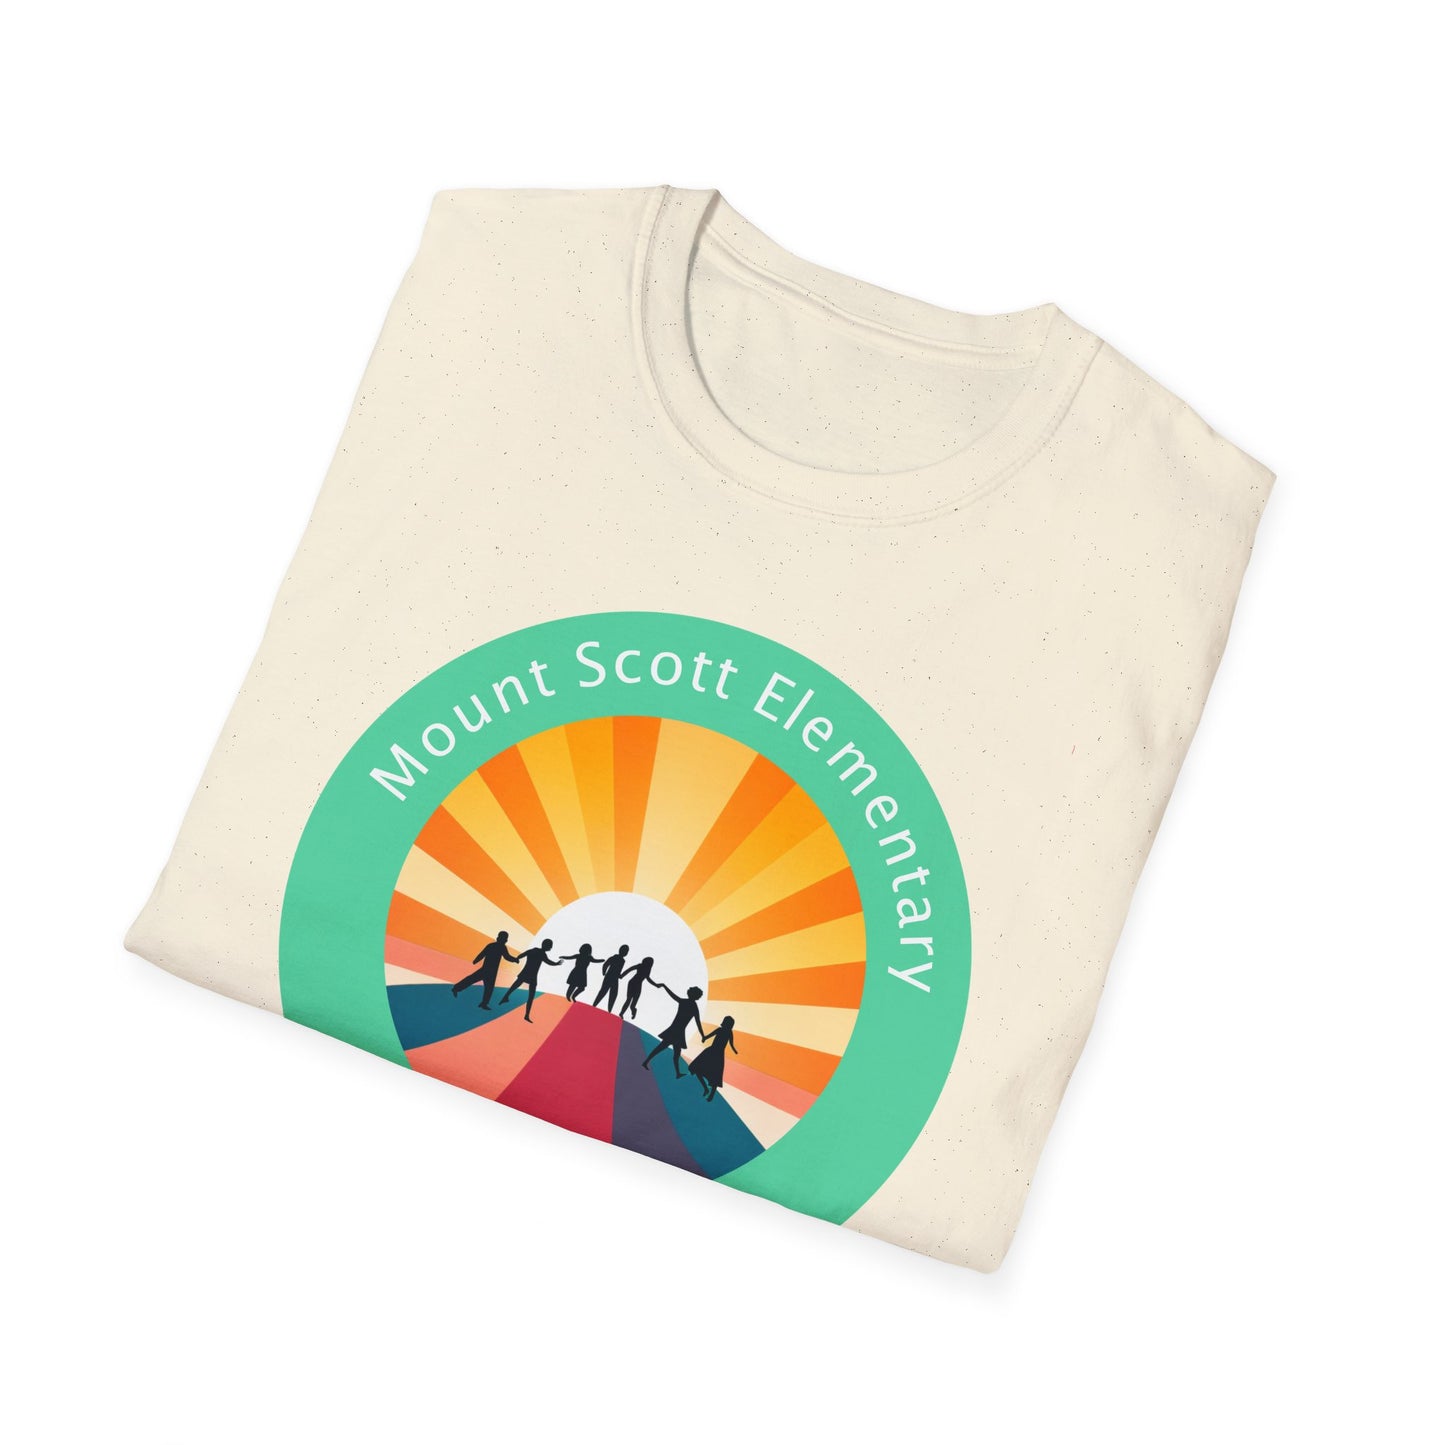 2023 Celebrate community connection Unisex Softstyle T-Shirt